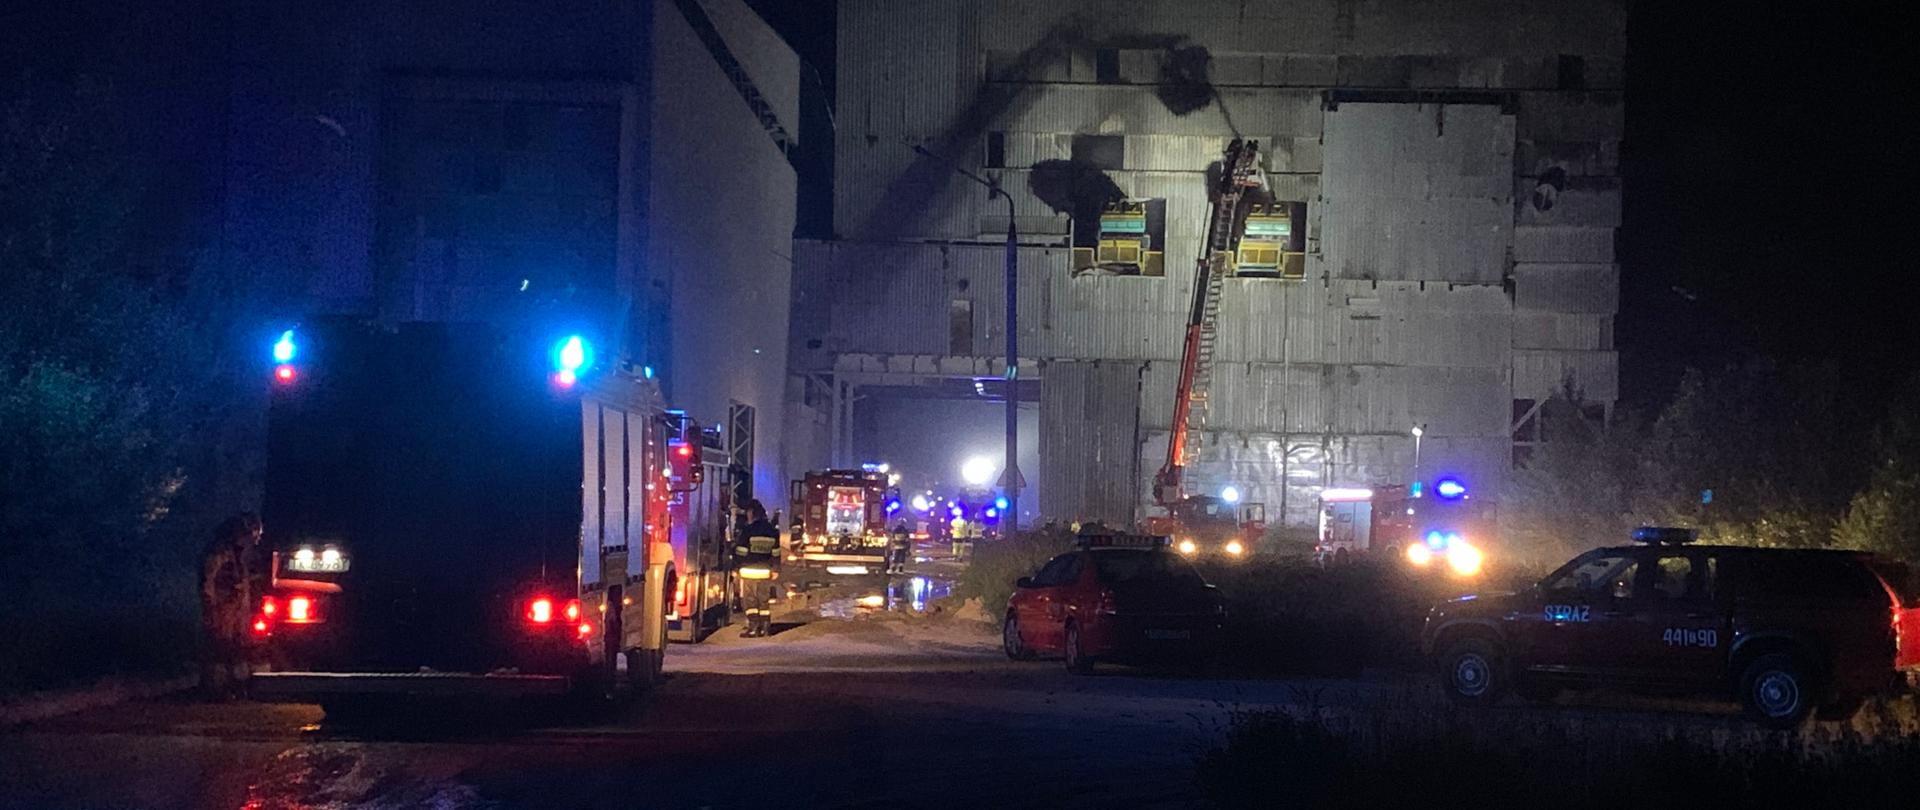 Zdjęcie przedstawia przedstawia pojazdy straży pożarnej z włączonym oświetleniem w nocy, w oddali widoczny podnośnik hydrauliczny przy budynkach cementowni, z którego strażacy gaszą pożar taśmociągów.